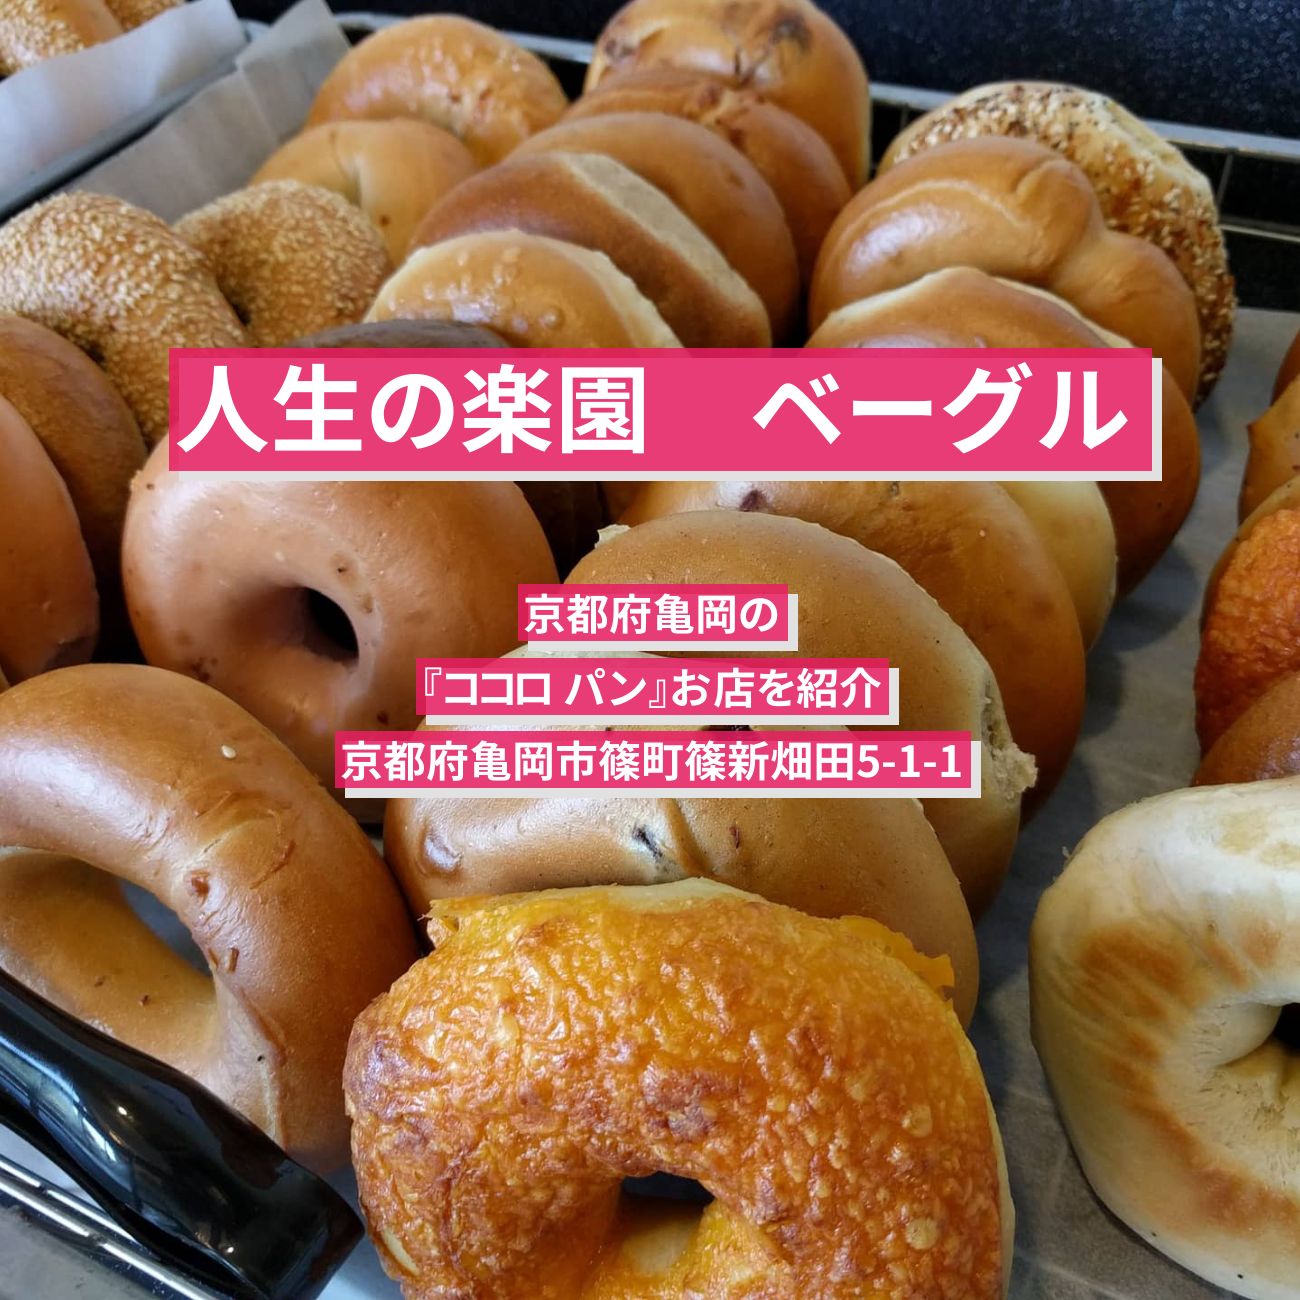 【人生の楽園】ベーグル『ココロ パン』京都府亀岡のお店を紹介